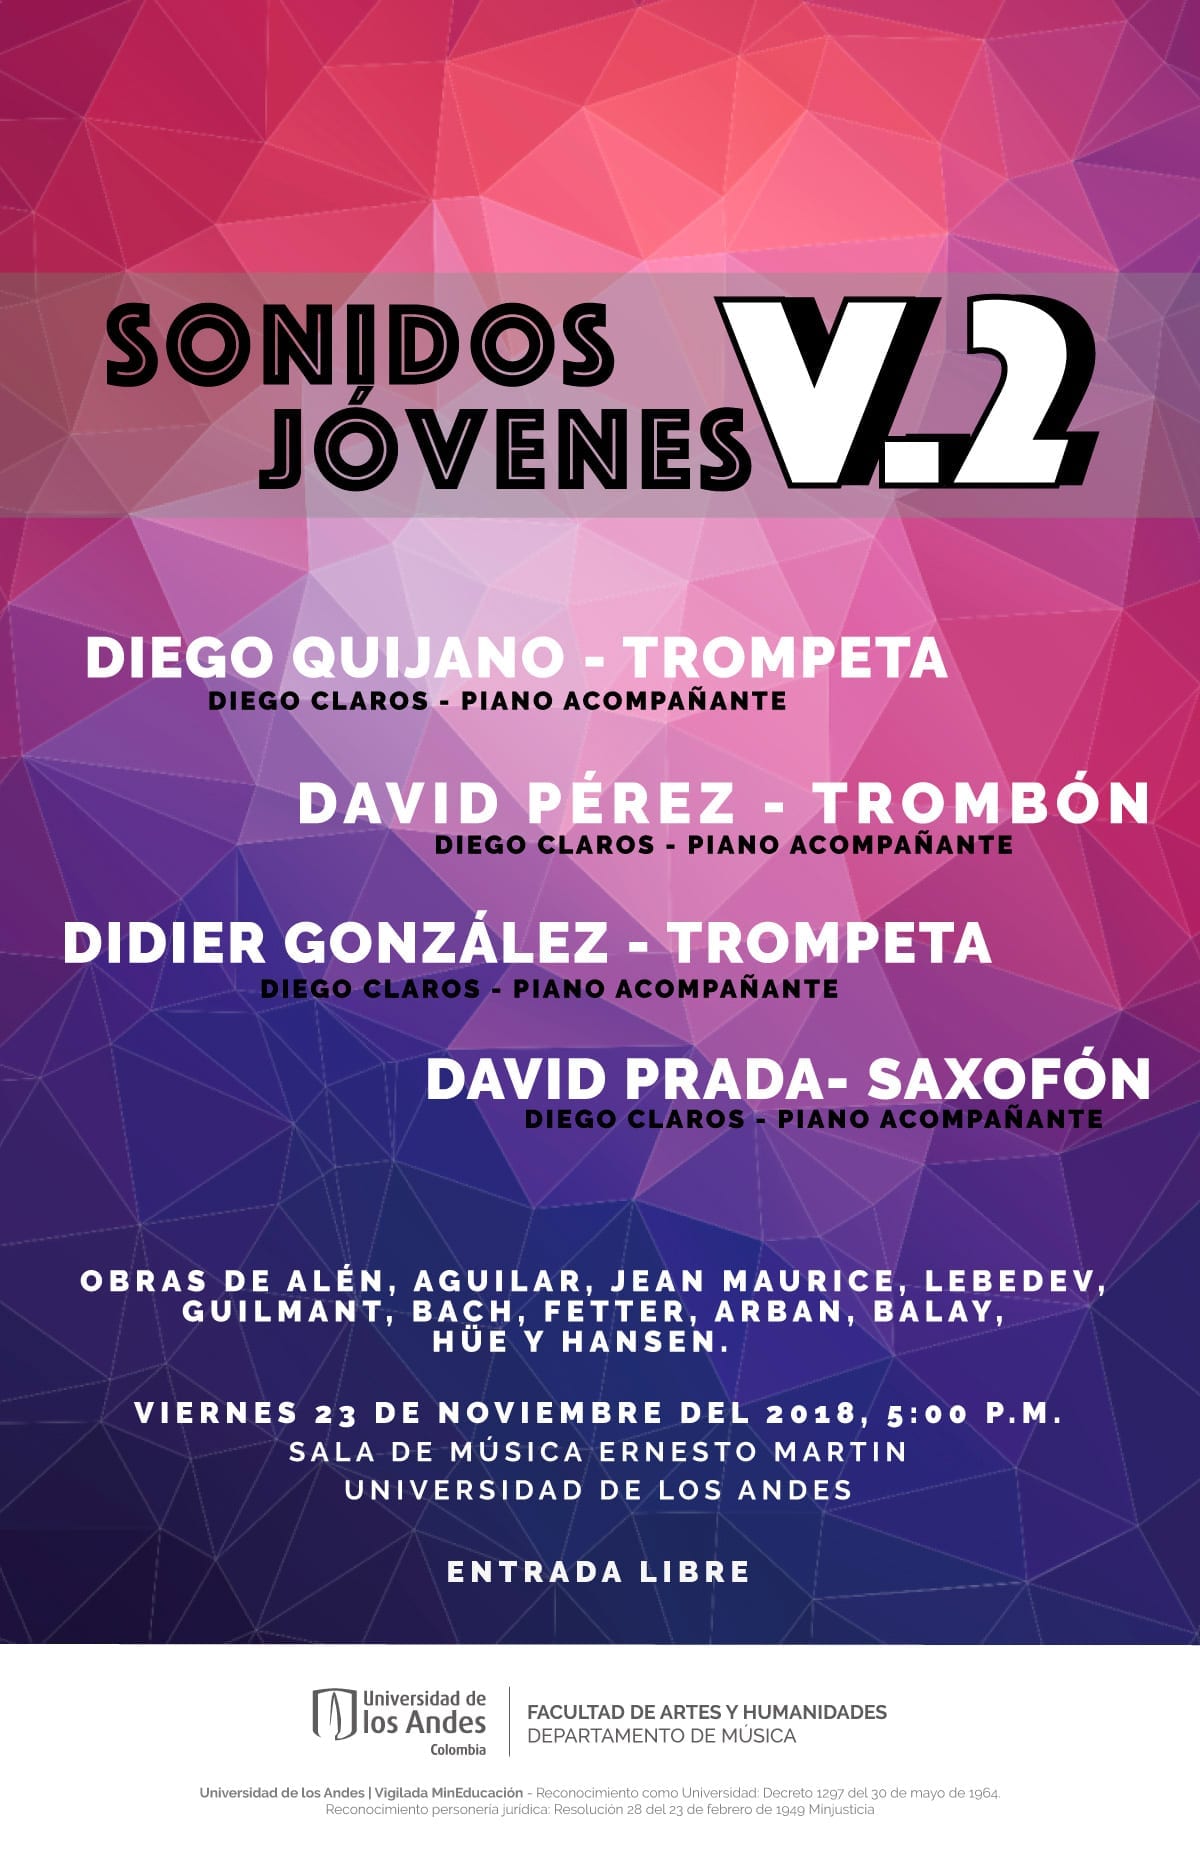 Diego Quijano, trompeta, David Pérez, trombón, Didier González, trompeta y David Prada, saxofón, se presentan en el cuarto concierto de Sonidos Jóvenes.